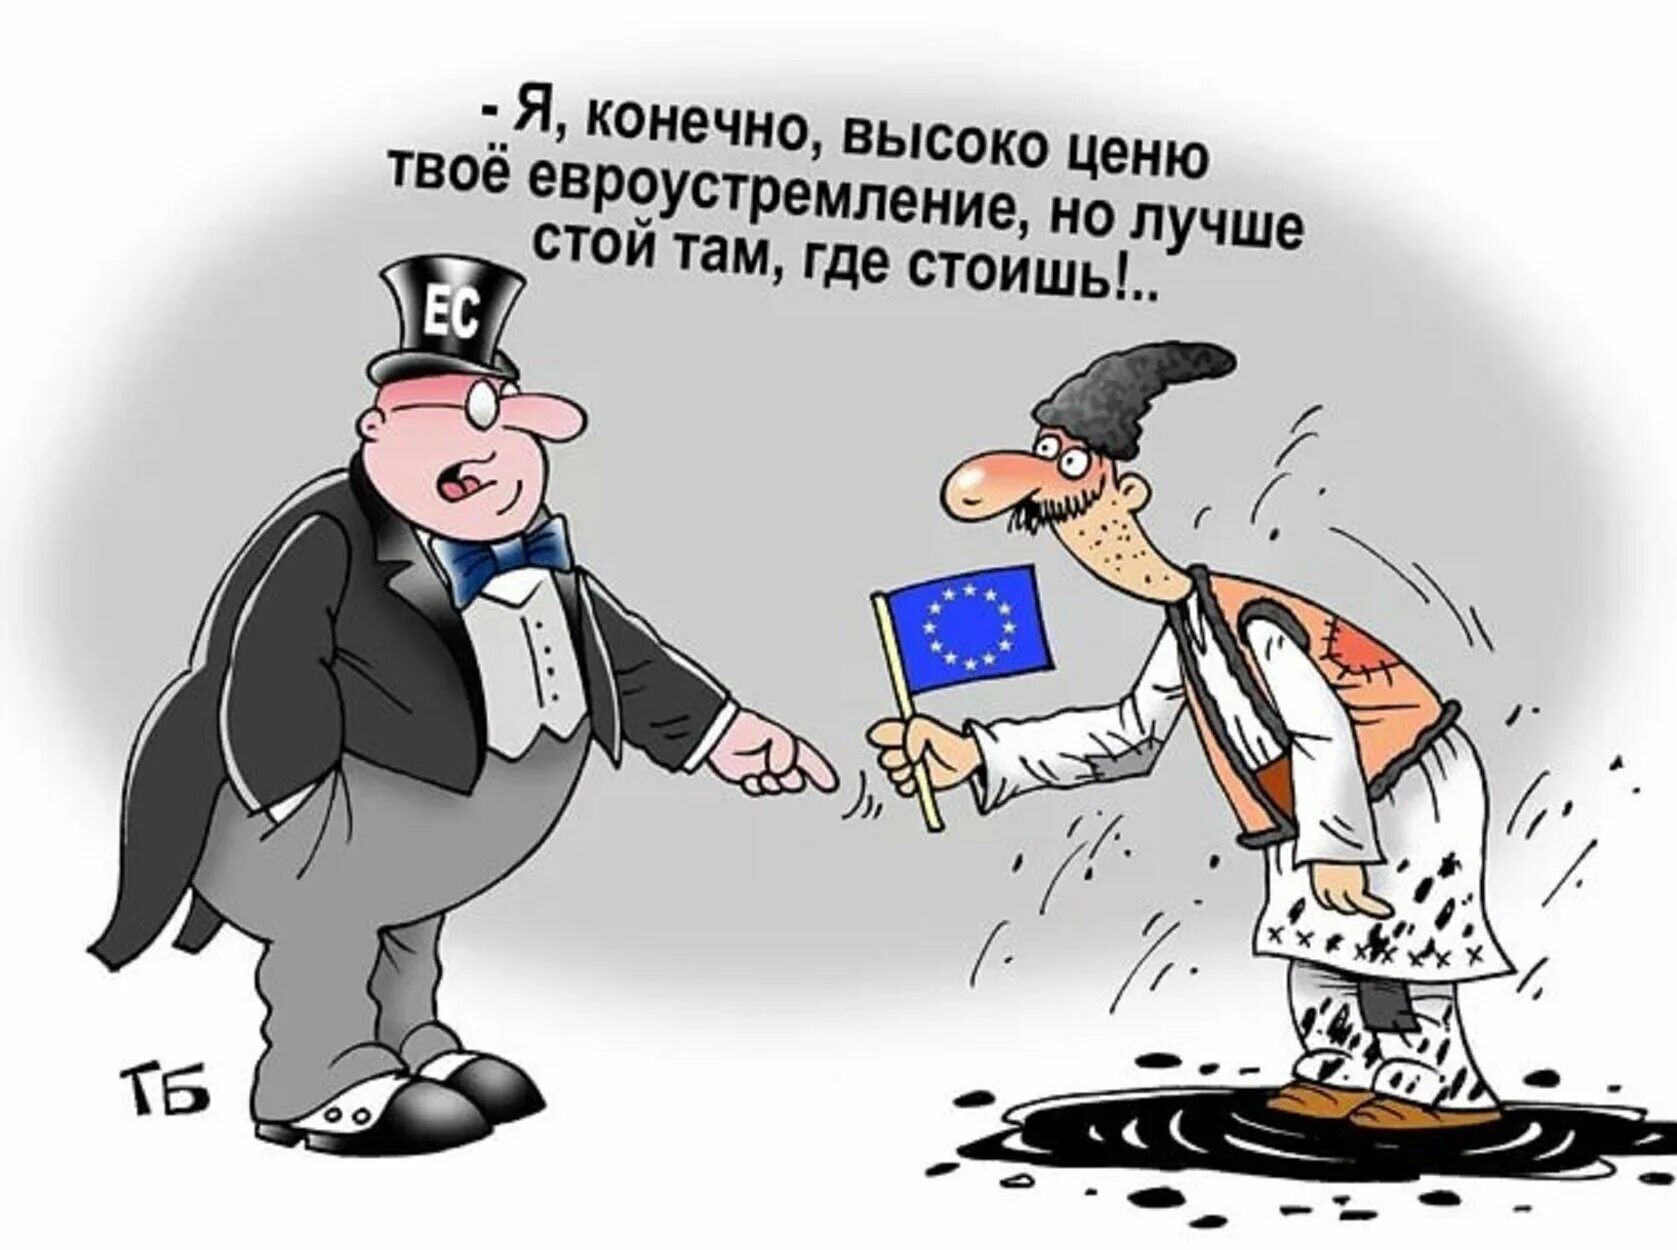 Стой там где стоишь. Анекдоты про Евросоюз. Молдаване карикатура. Украинцы в Европе карикатура. Шутки про Евросоюз.